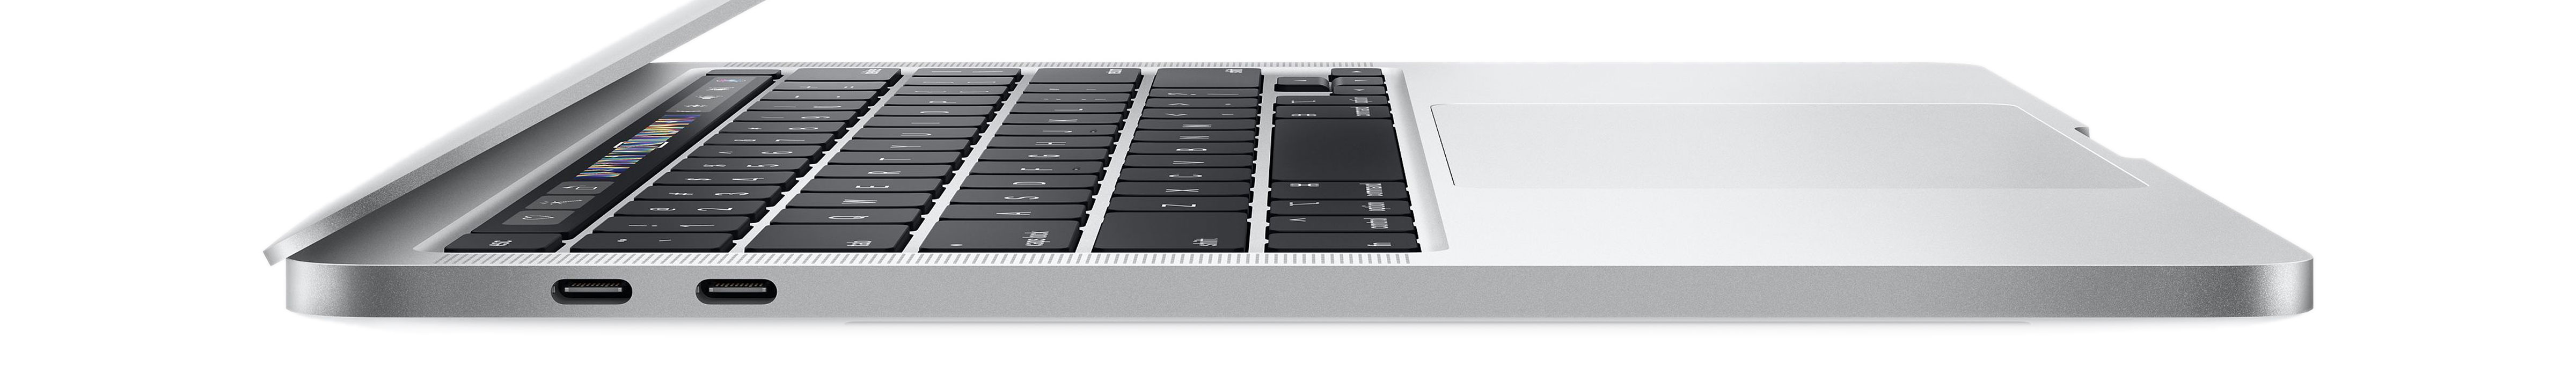 MacBook Pro 15-inch - 2019